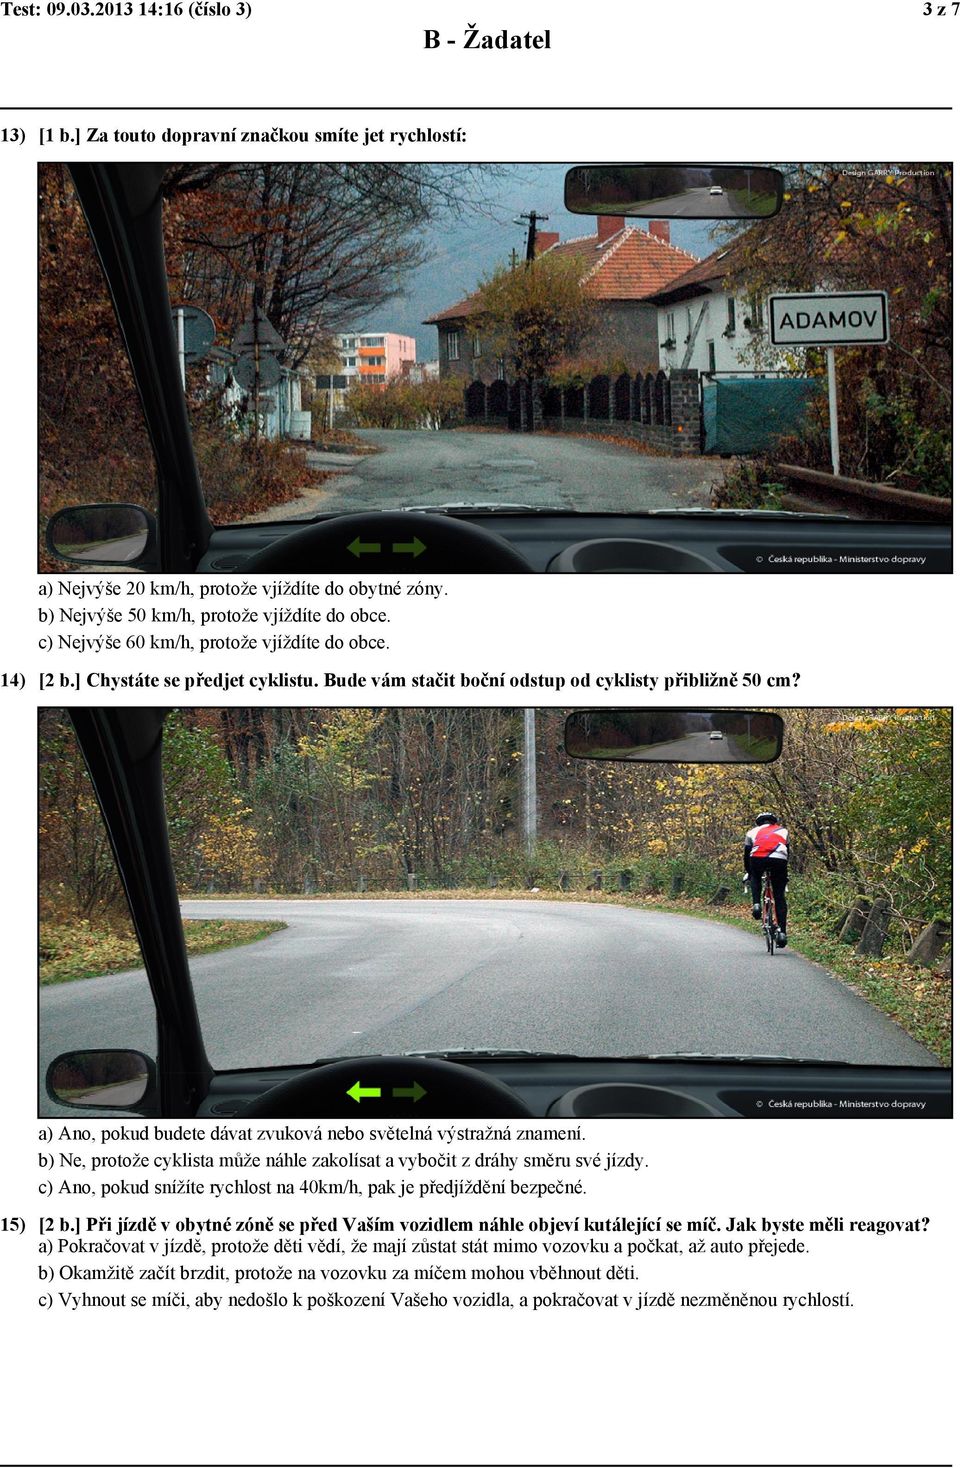 a) Ano, pokud budete dávat zvuková nebo světelná výstražná znamení. b) Ne, protože cyklista může náhle zakolísat a vybočit z dráhy směru své jízdy.